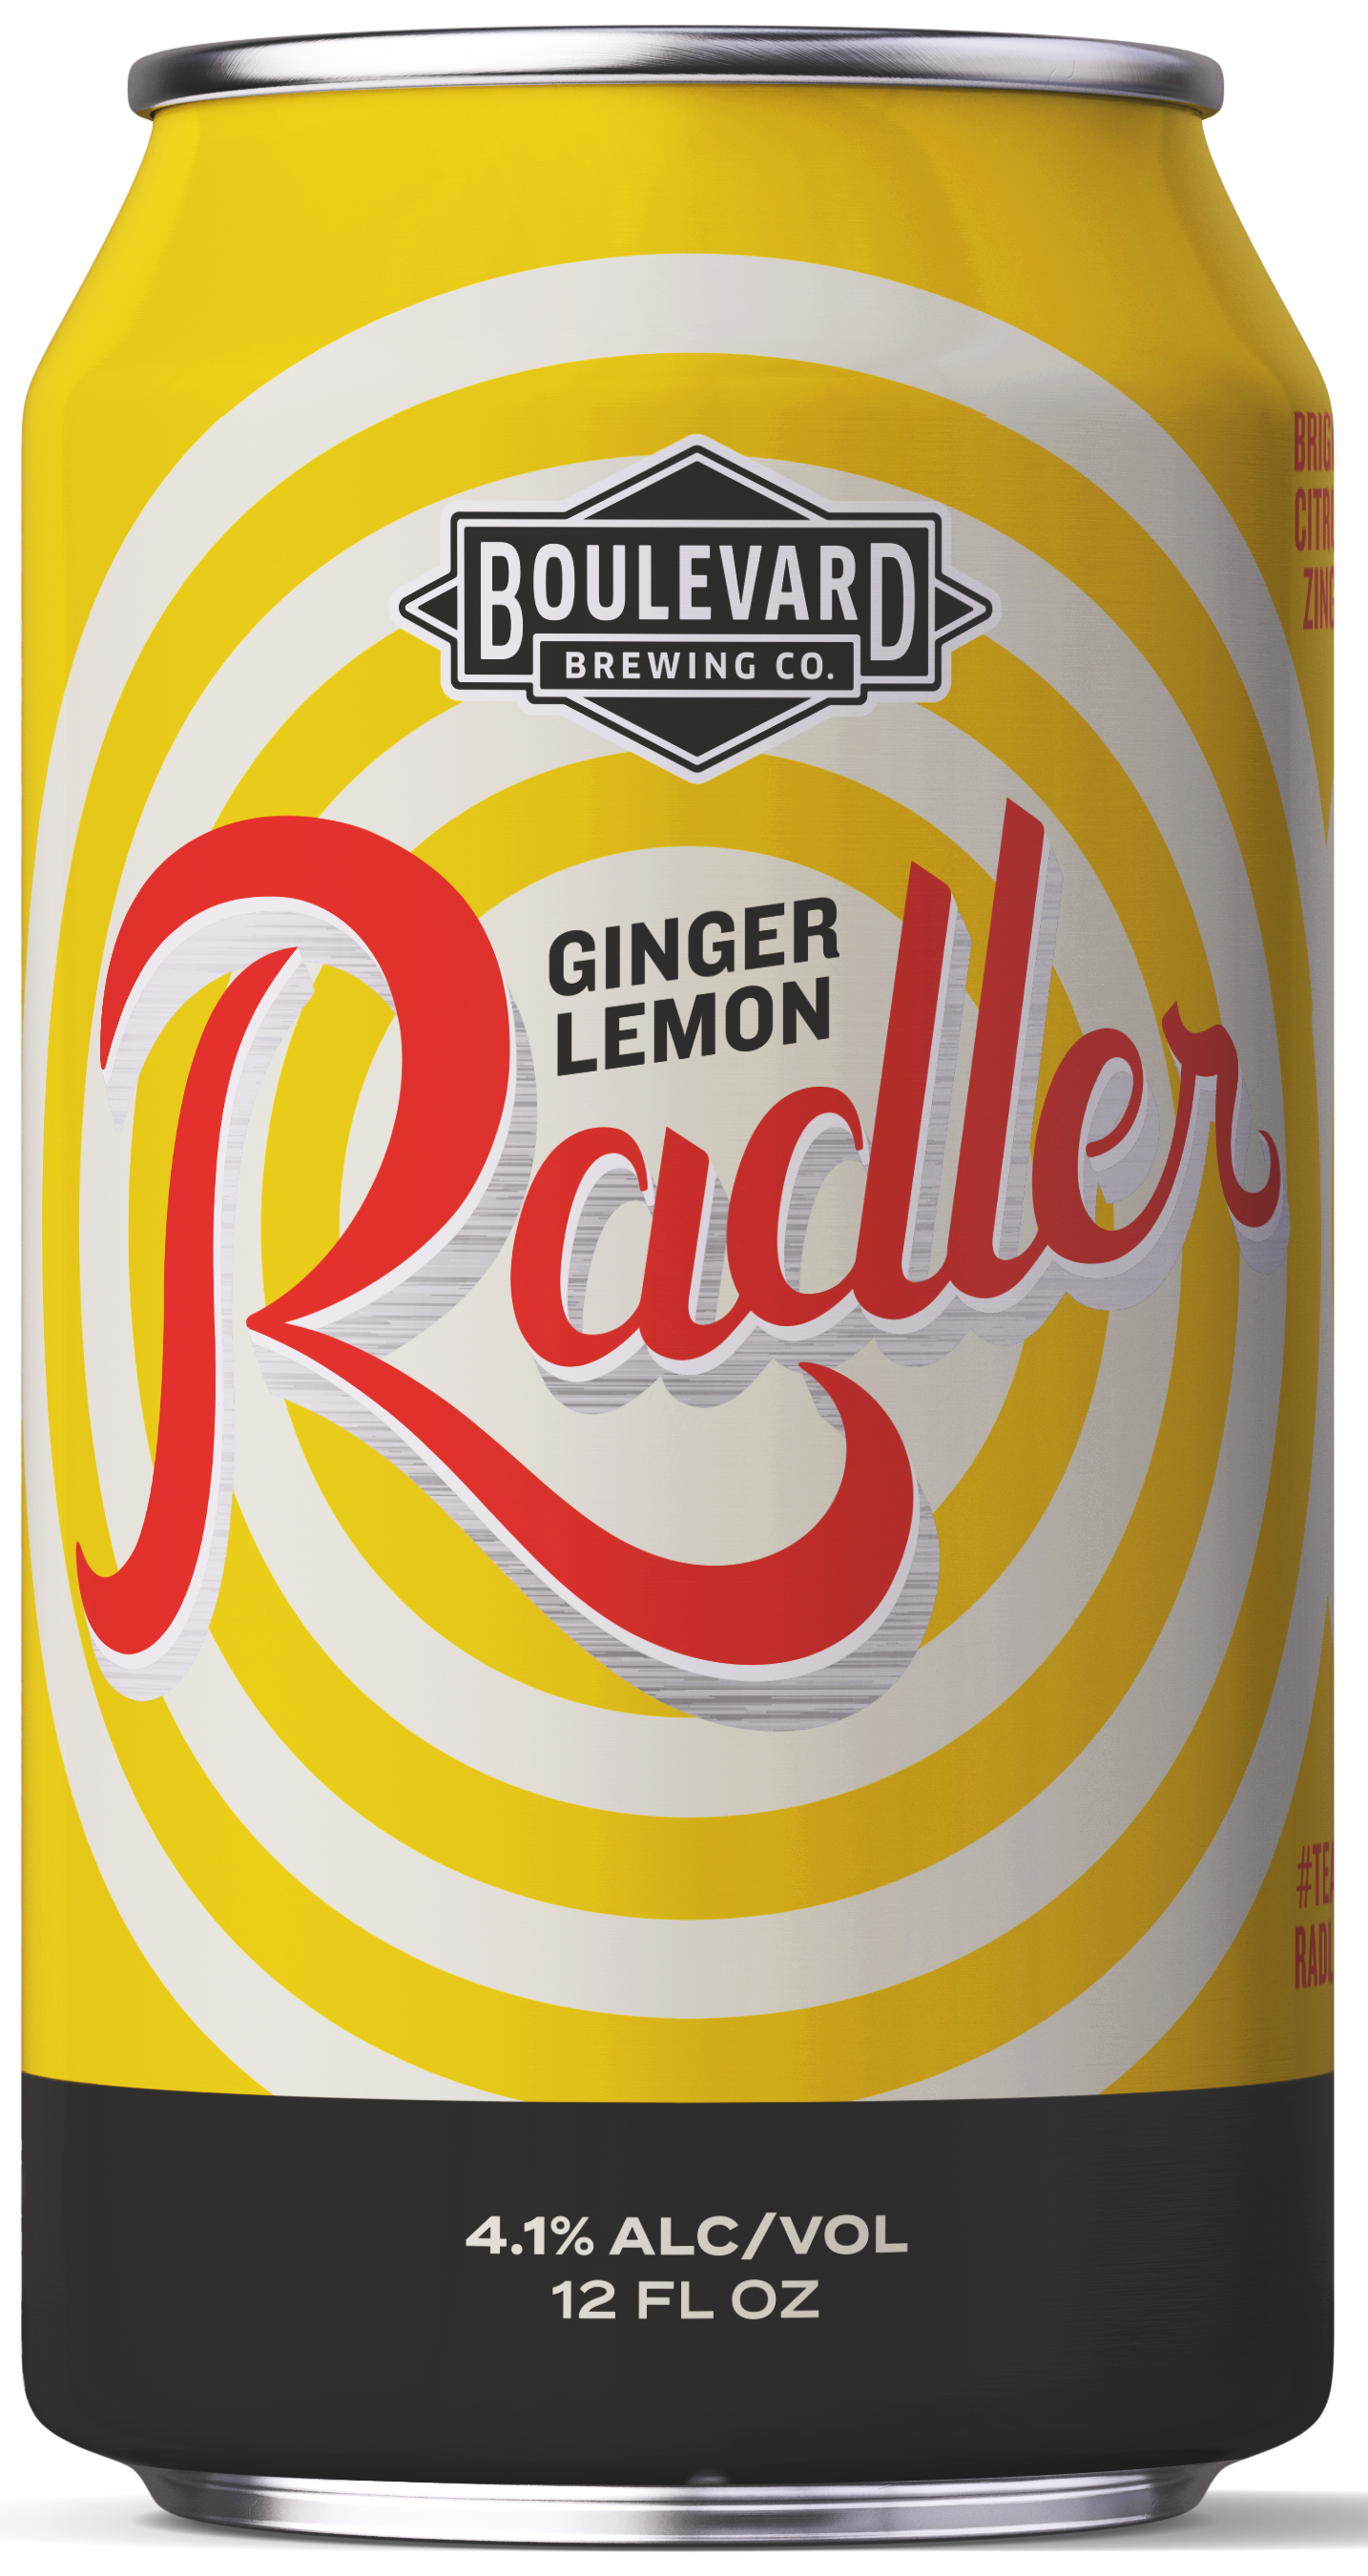 Ginger Lemon Radler